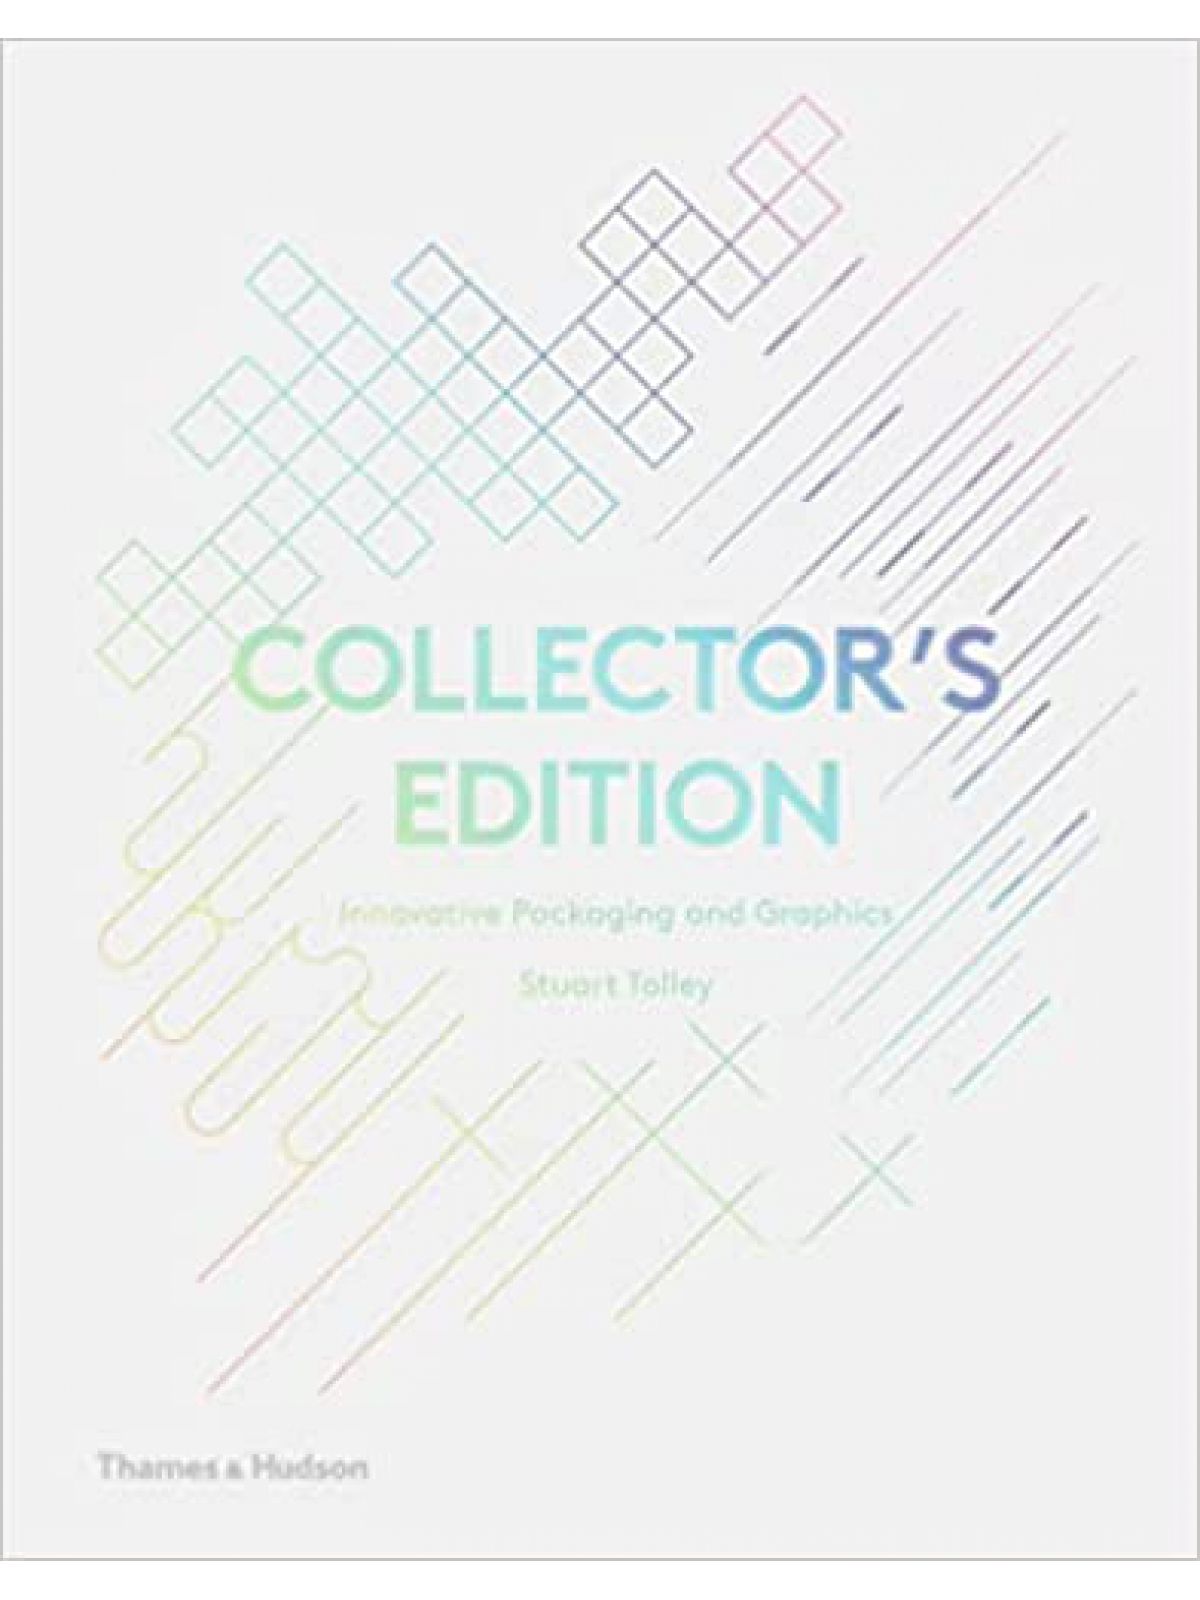 COLLECTOR’S EDITION TOLLEY, STUART Купить Книгу на Английском